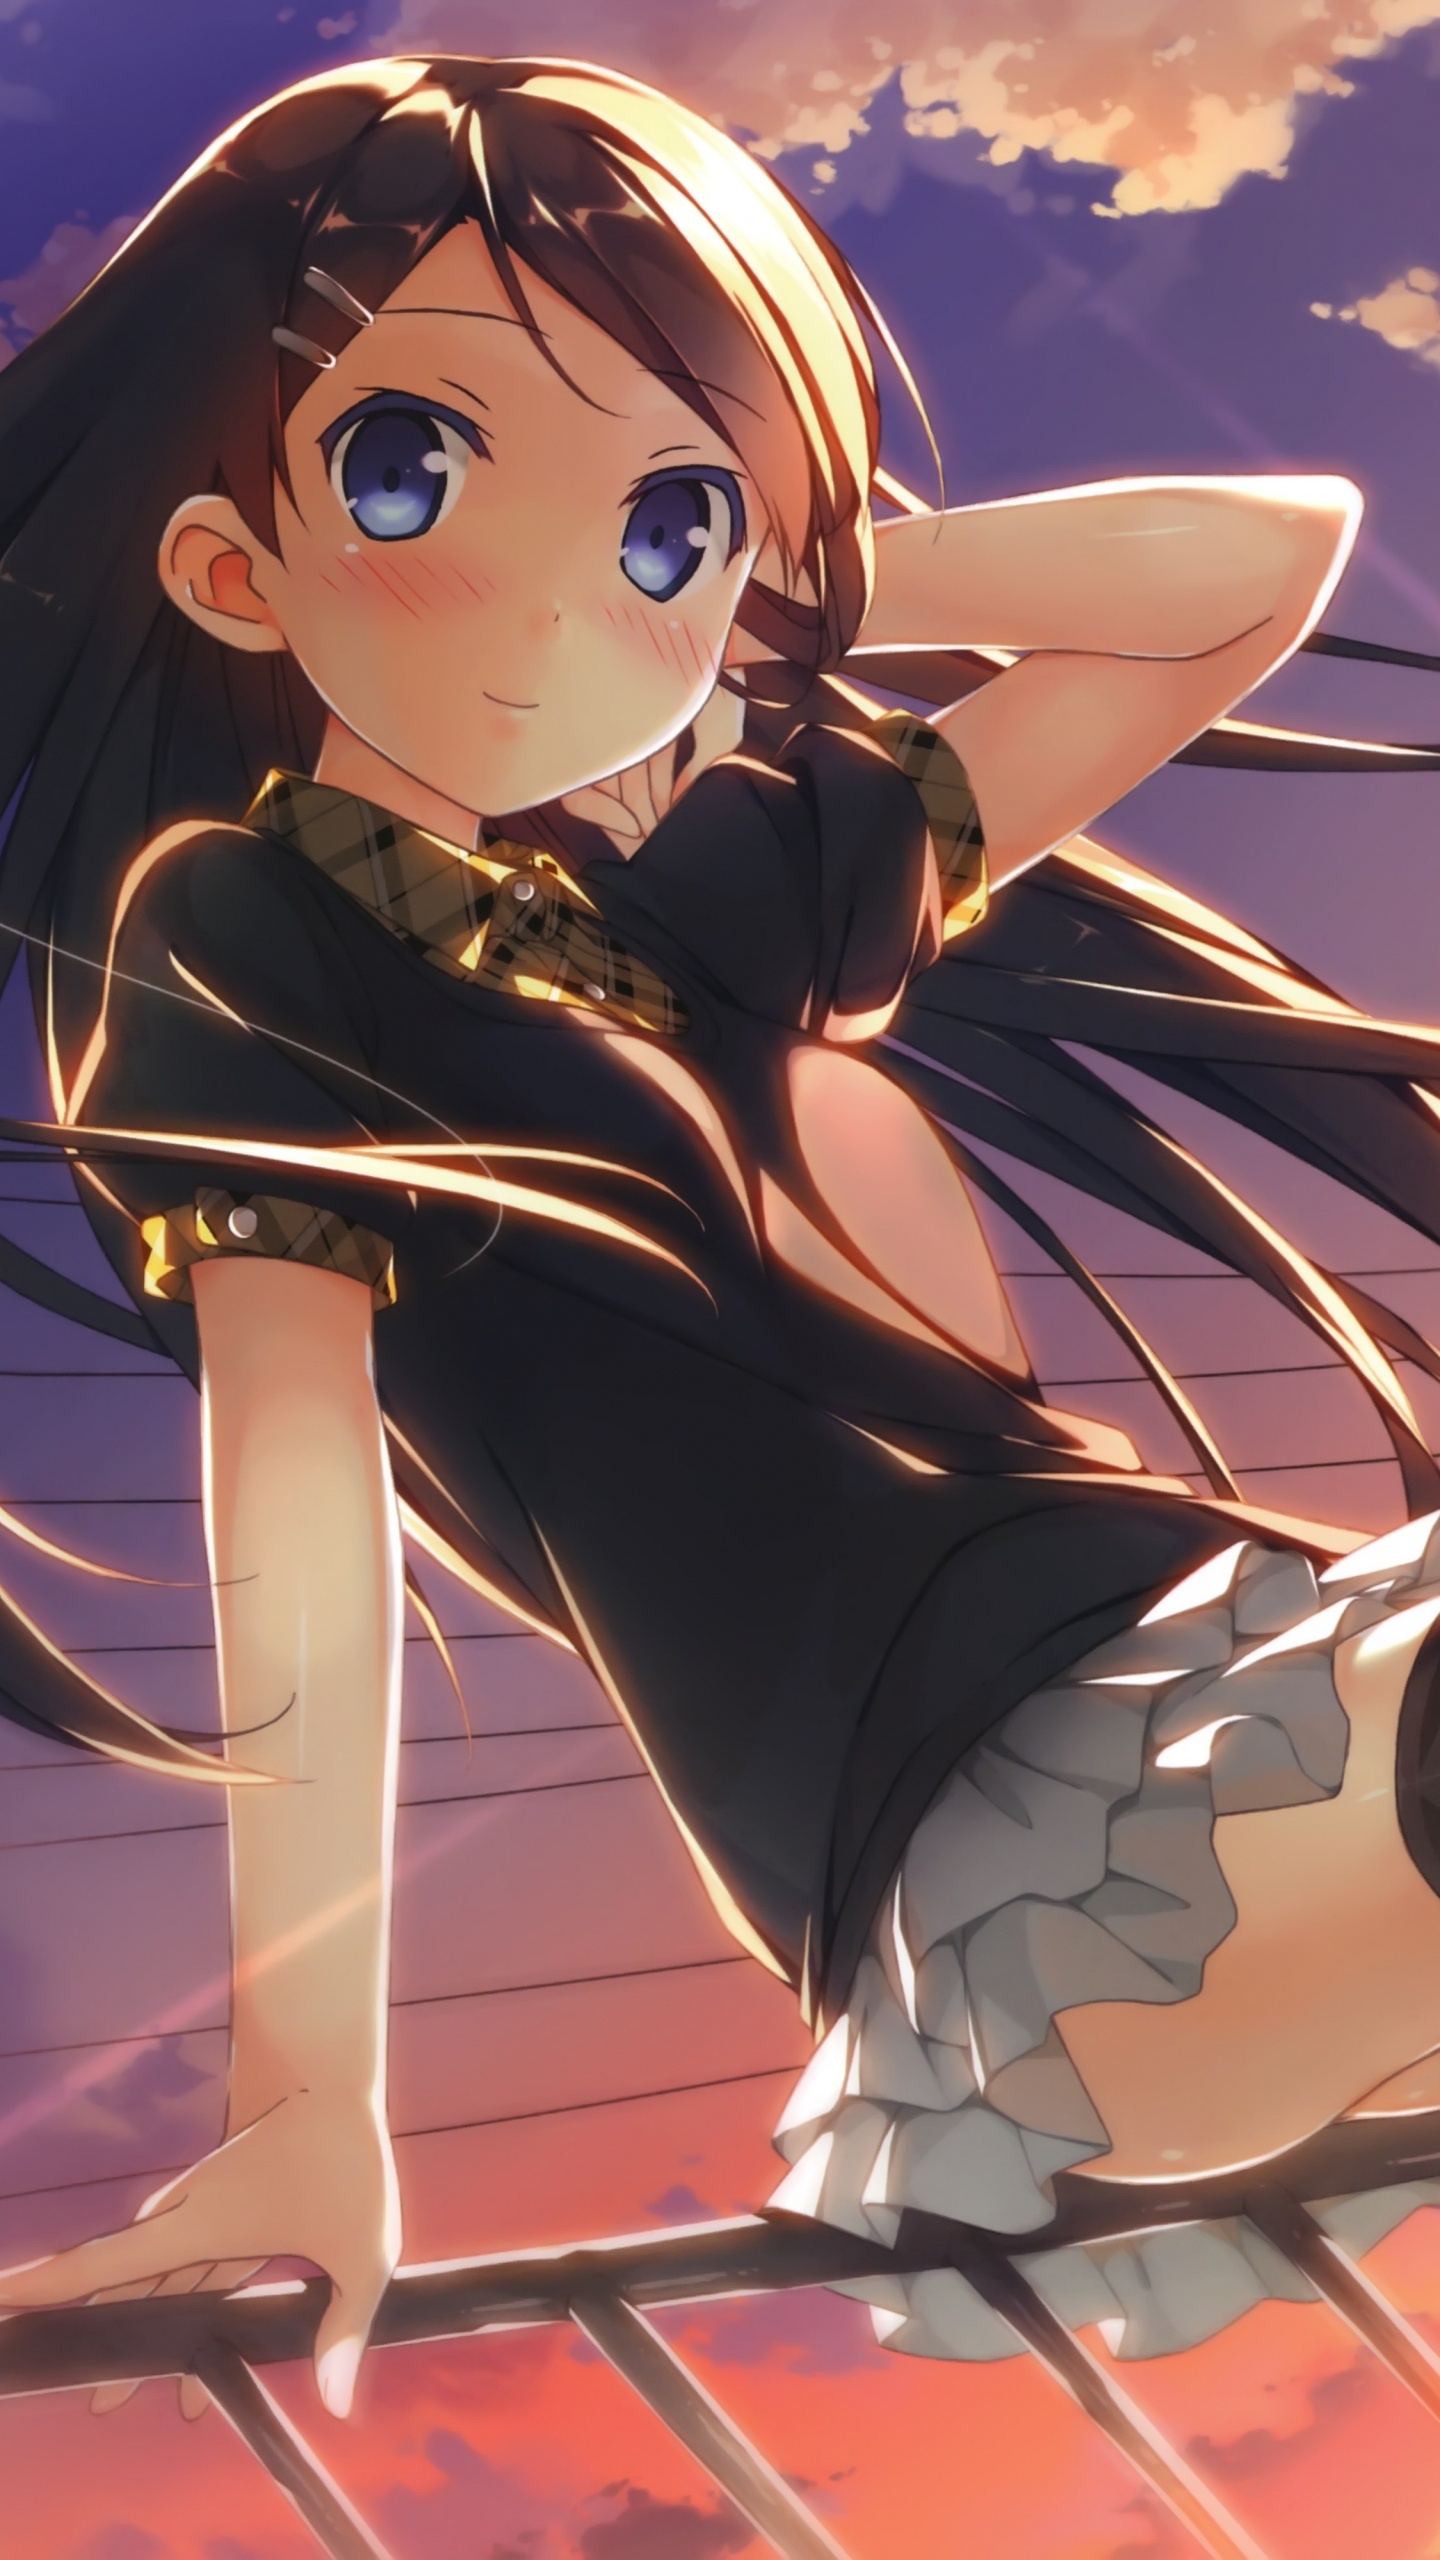 Mädchen in Schwarz-weißer Schuluniform Anime-Charakter. Wallpaper in 1440x2560 Resolution